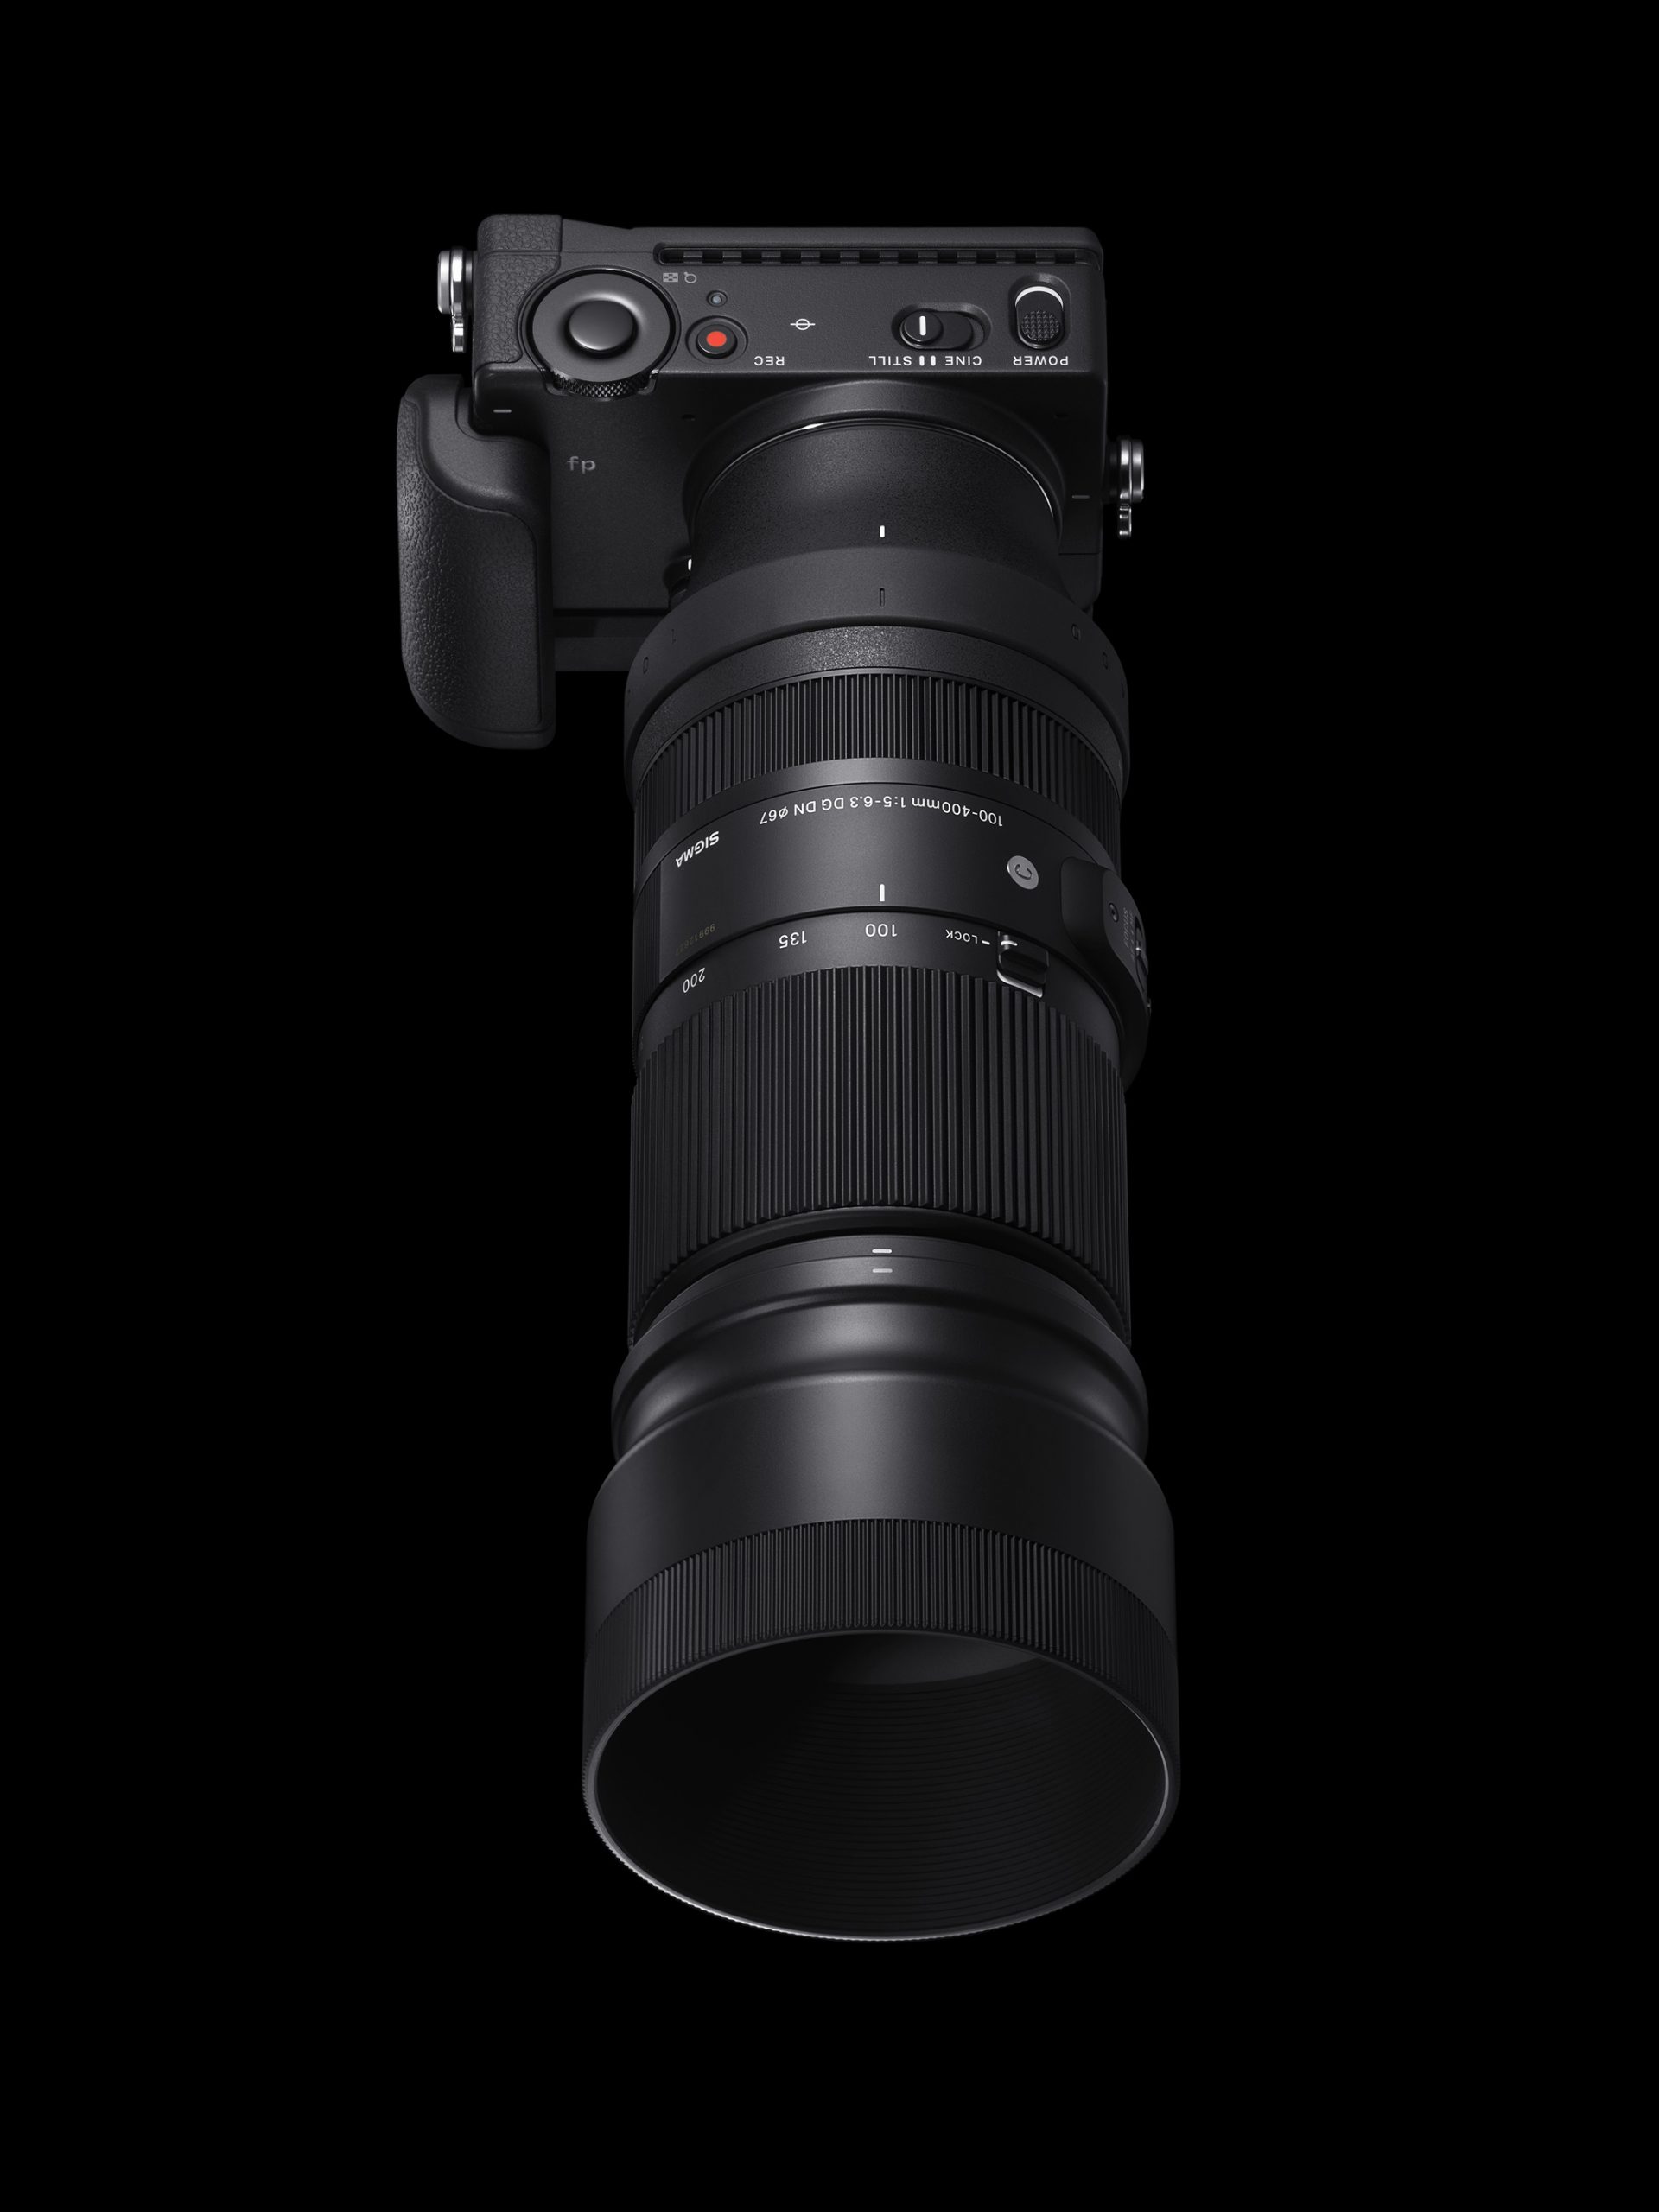 Ống kính Sigma 100-400mm cho Sony ngàm E mới chính thức ra mắt